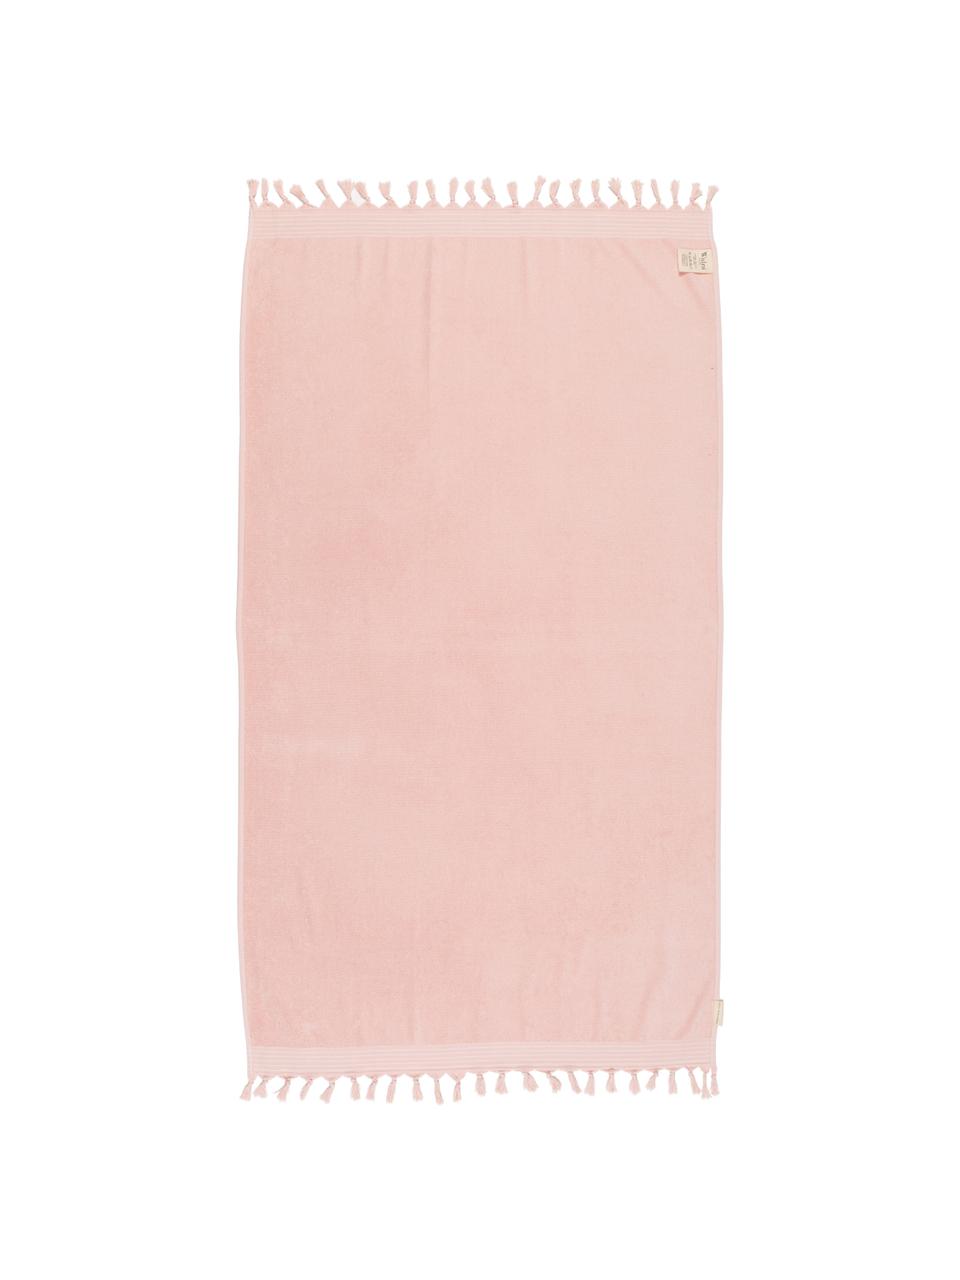 Hamamtuch Soft Cotton mit Frottee-Rückseite, Rückseite: Frottee, Rosa, Weiß, 100 x 180 cm